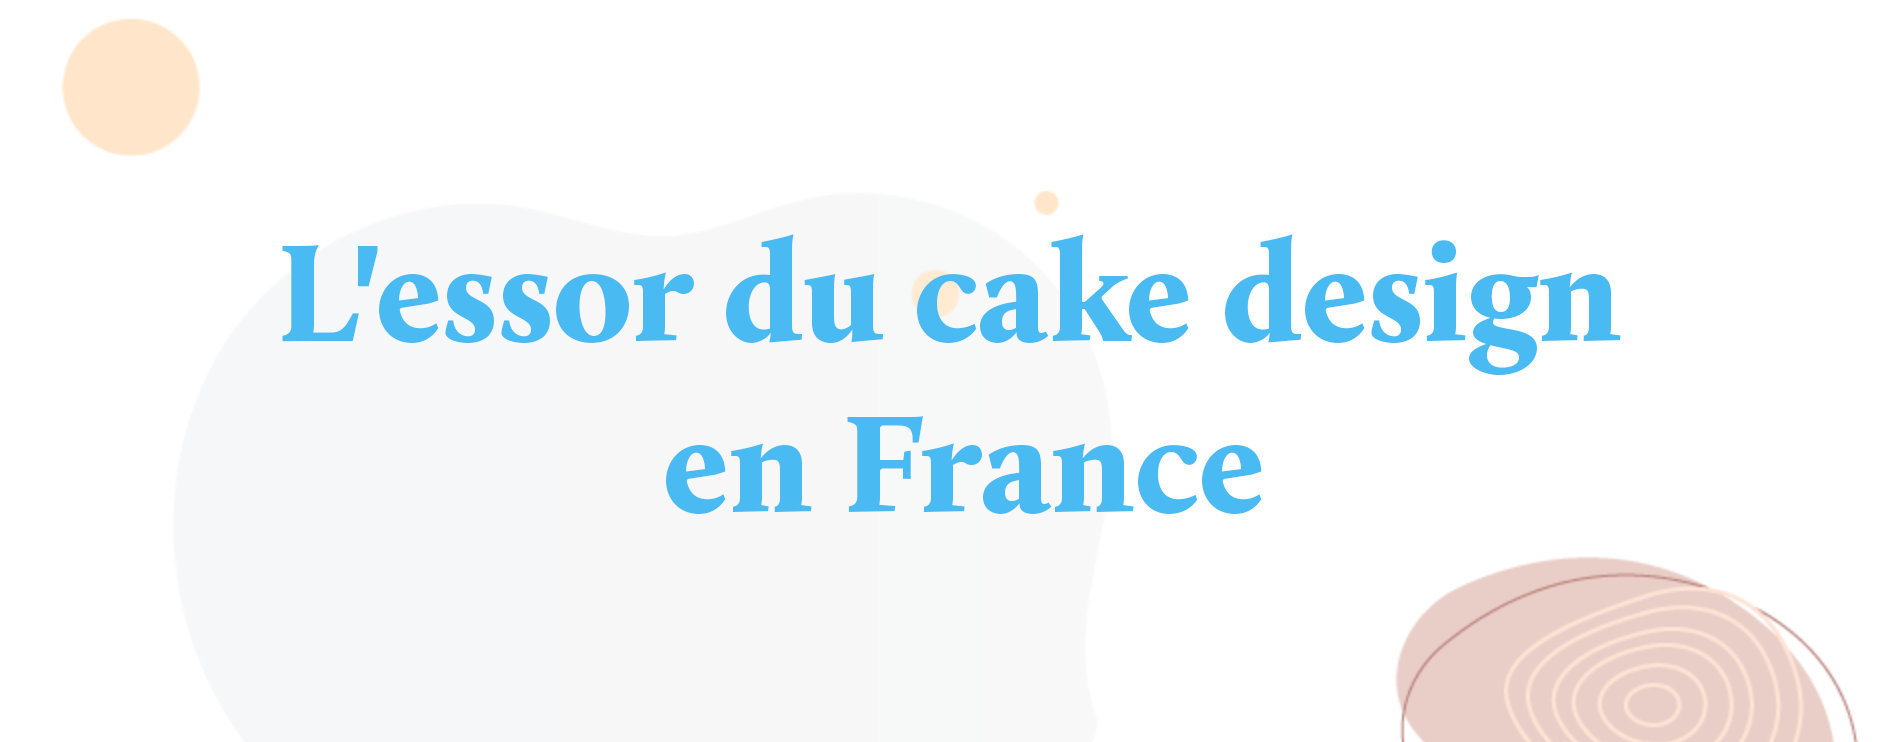 L'essor du cake design en France